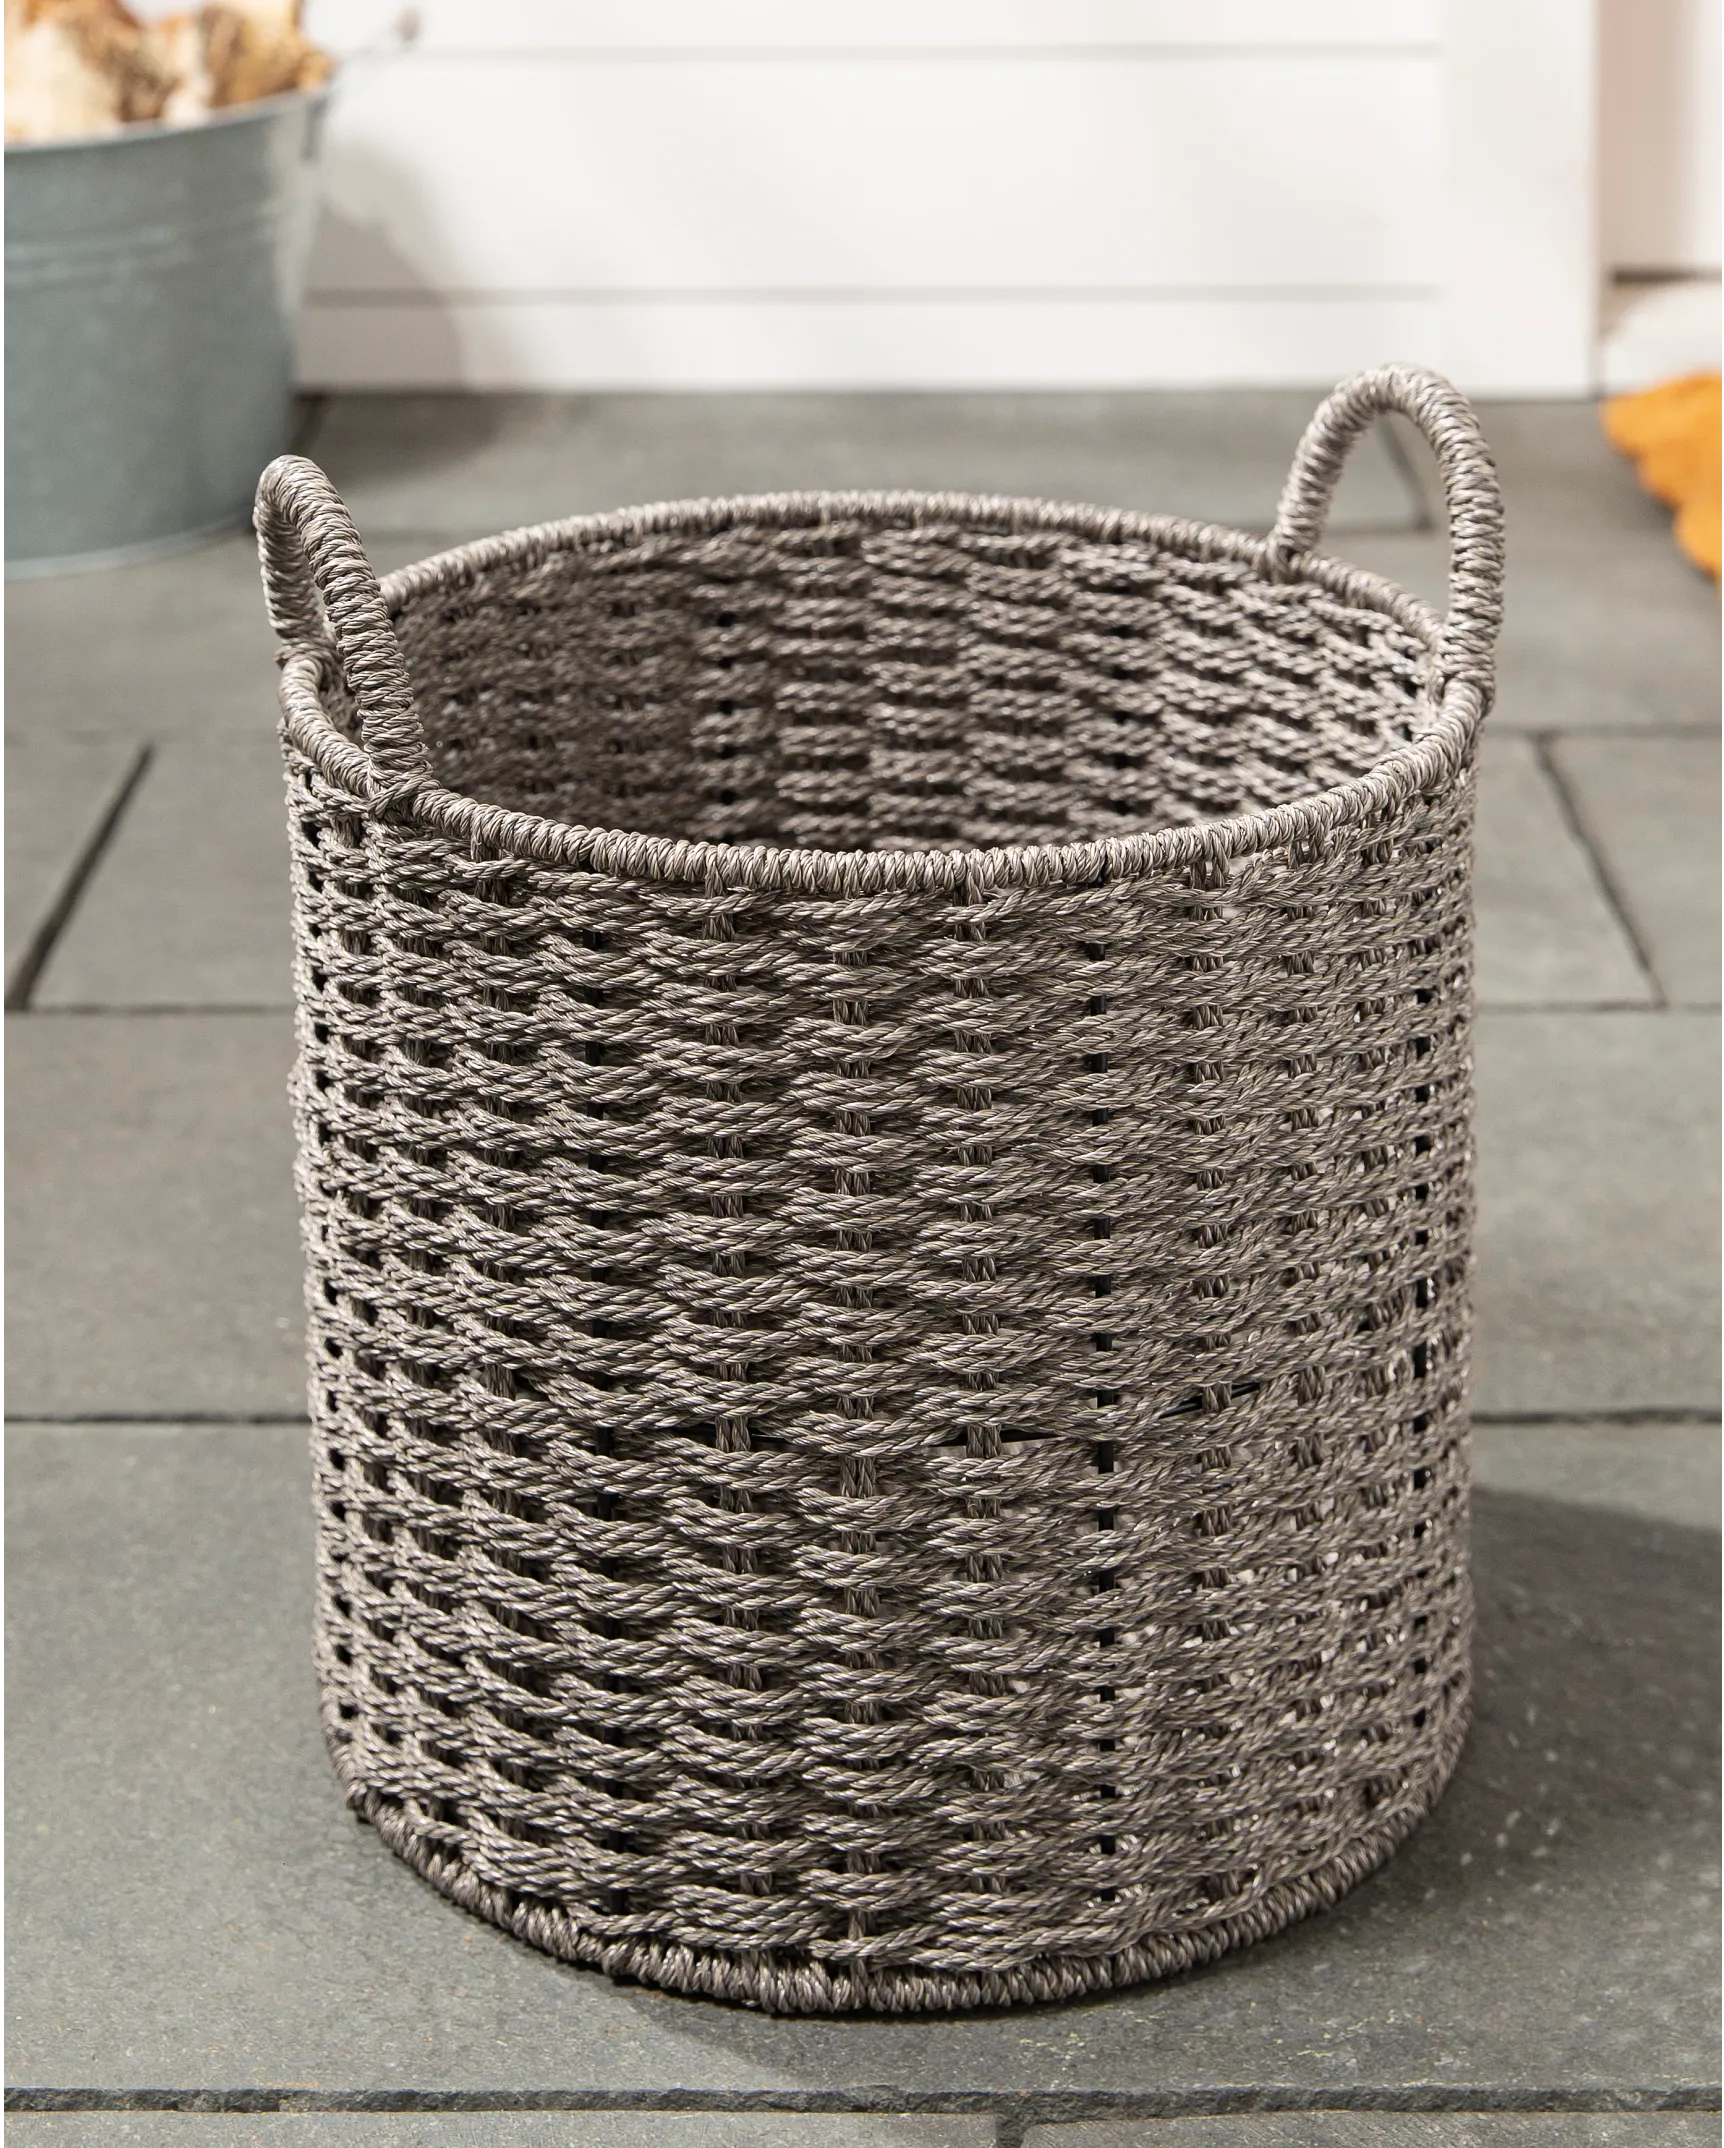 Small Gray Faux Rattan Storage Basket